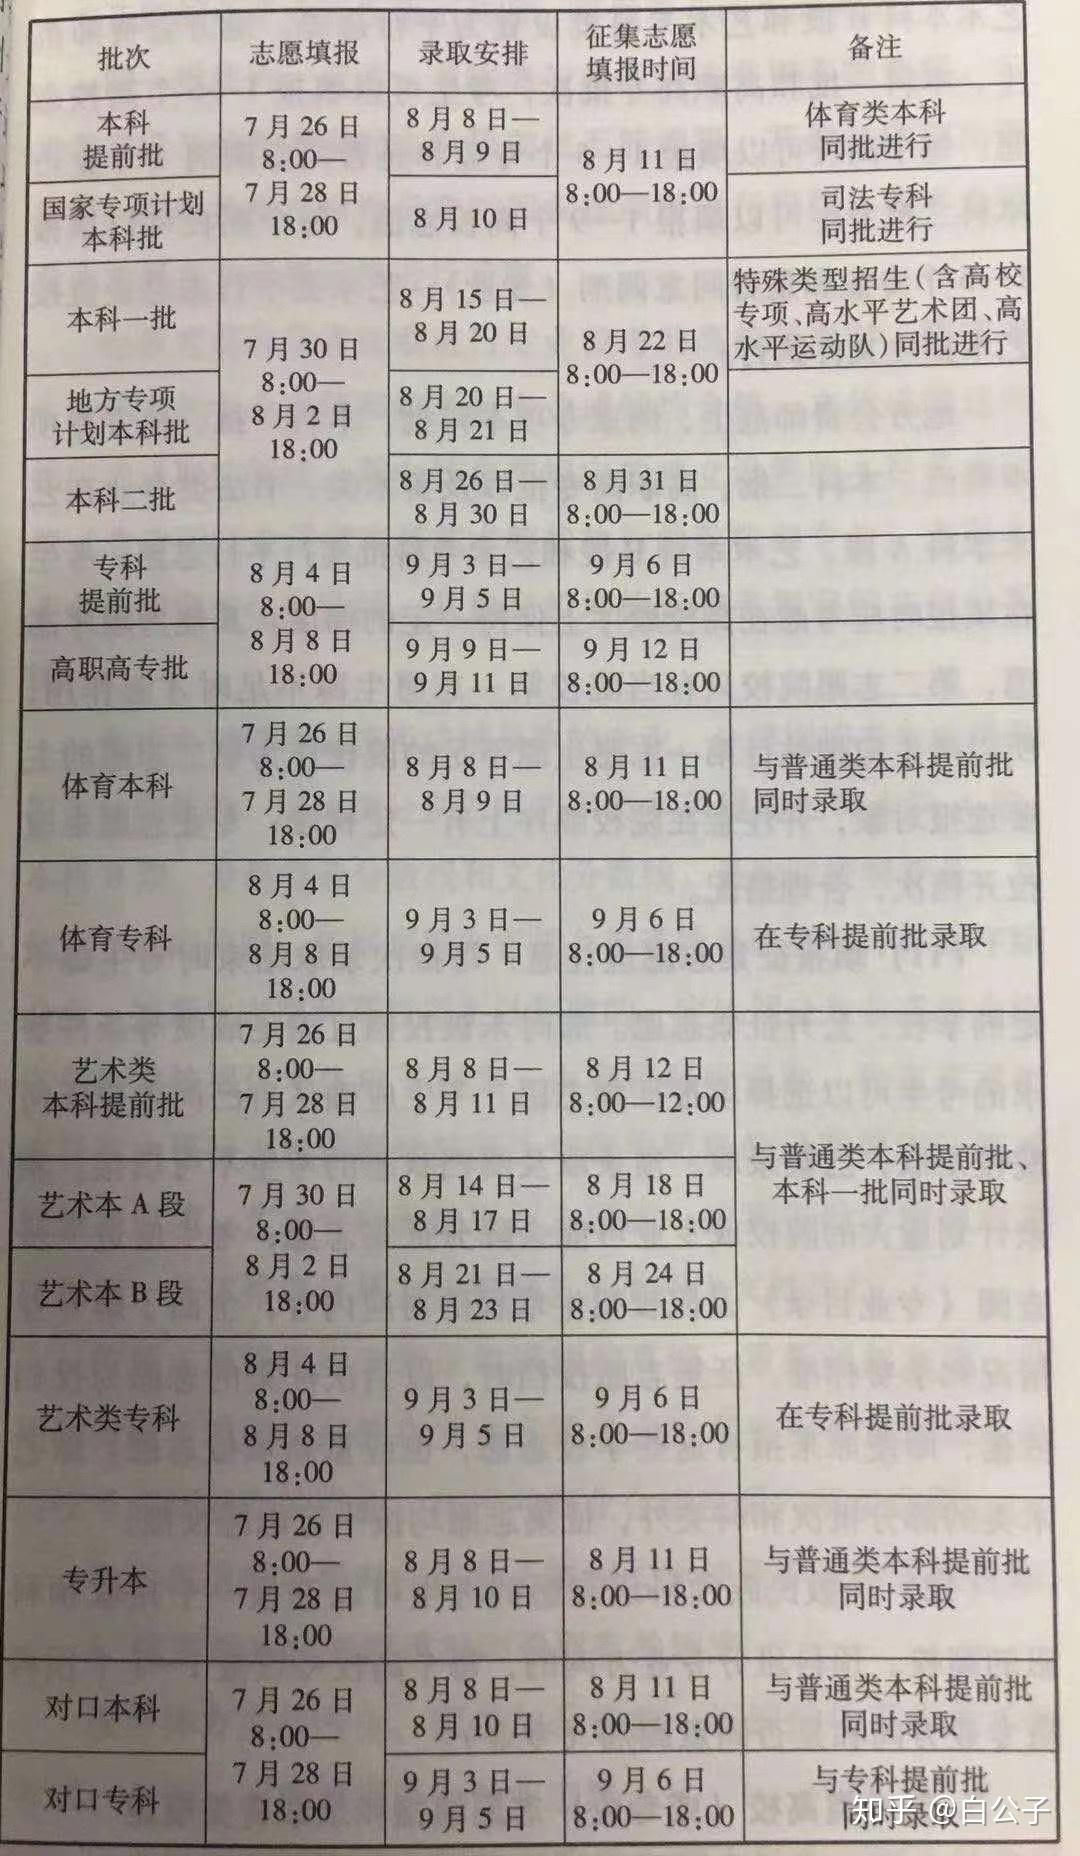 2020年河南省高考志愿填报录取安排征集志愿时间一览表旺柴调皮旺柴